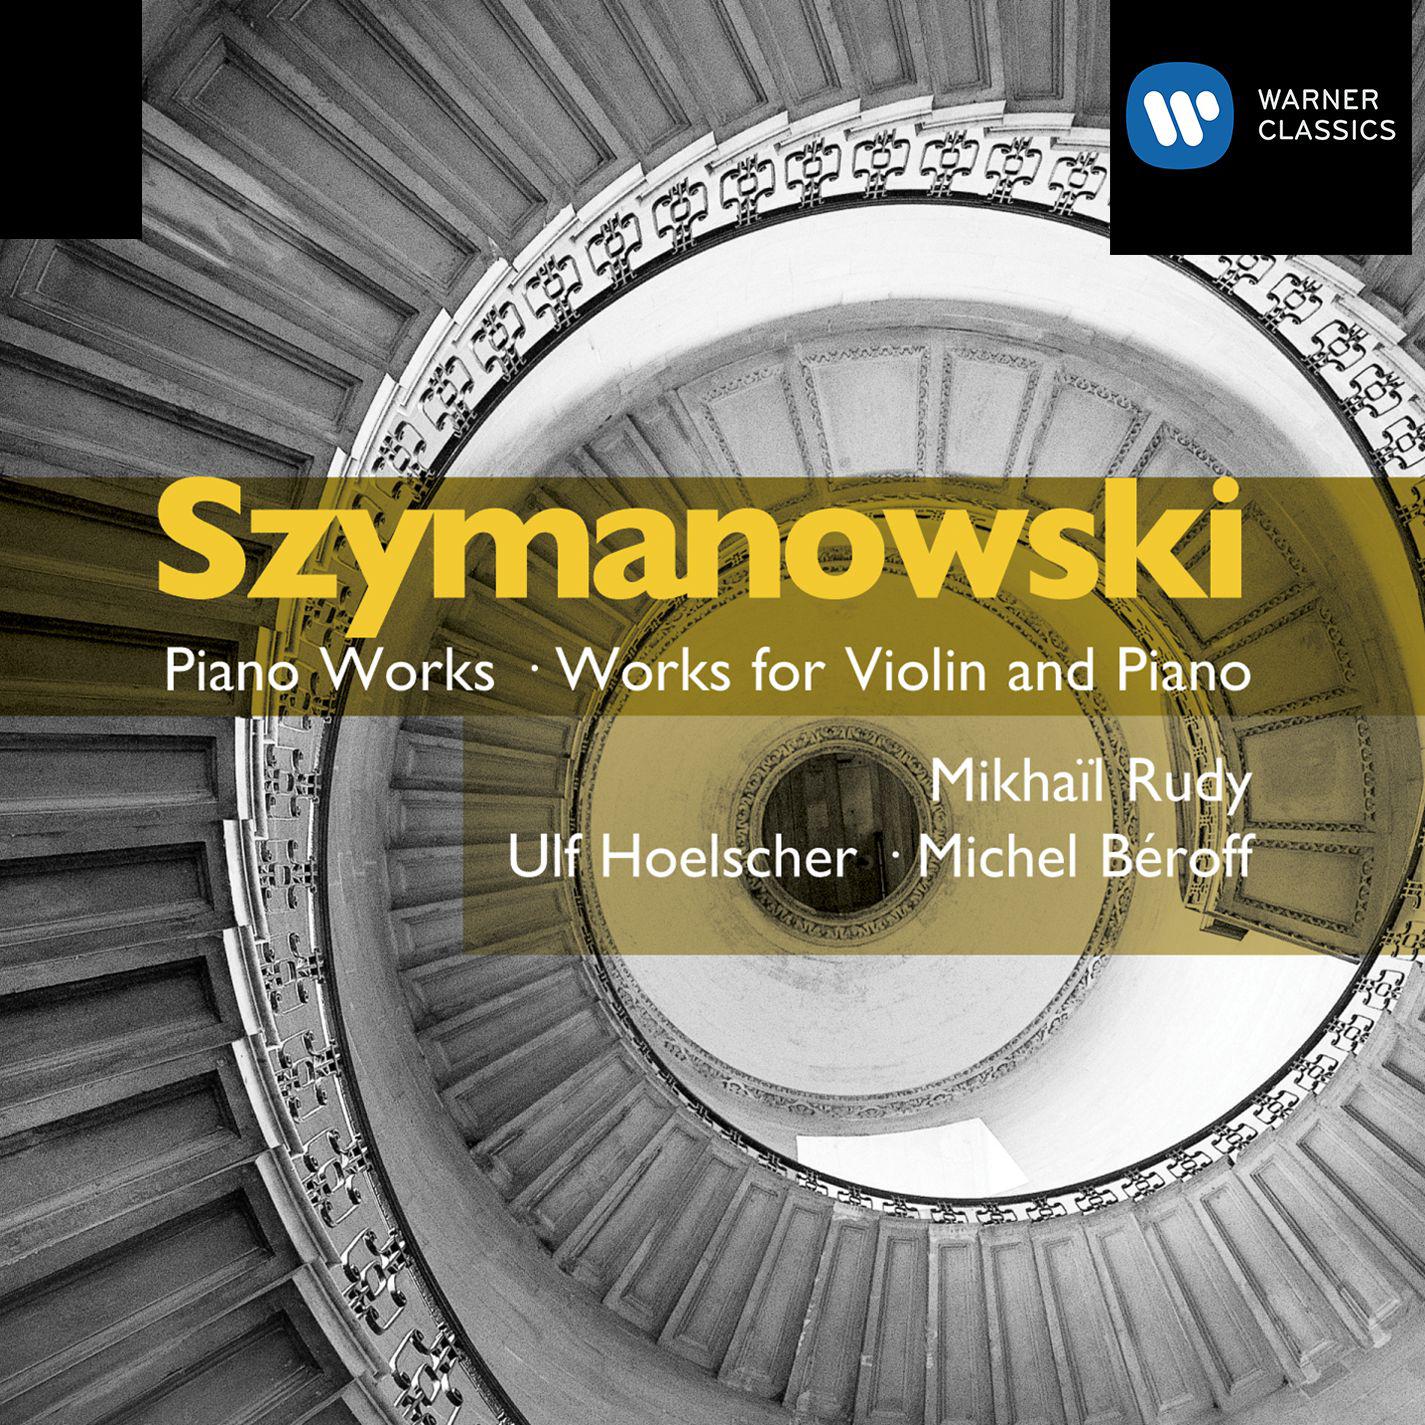 Work for Violin and Piano: Notturno e Tarantella op.28